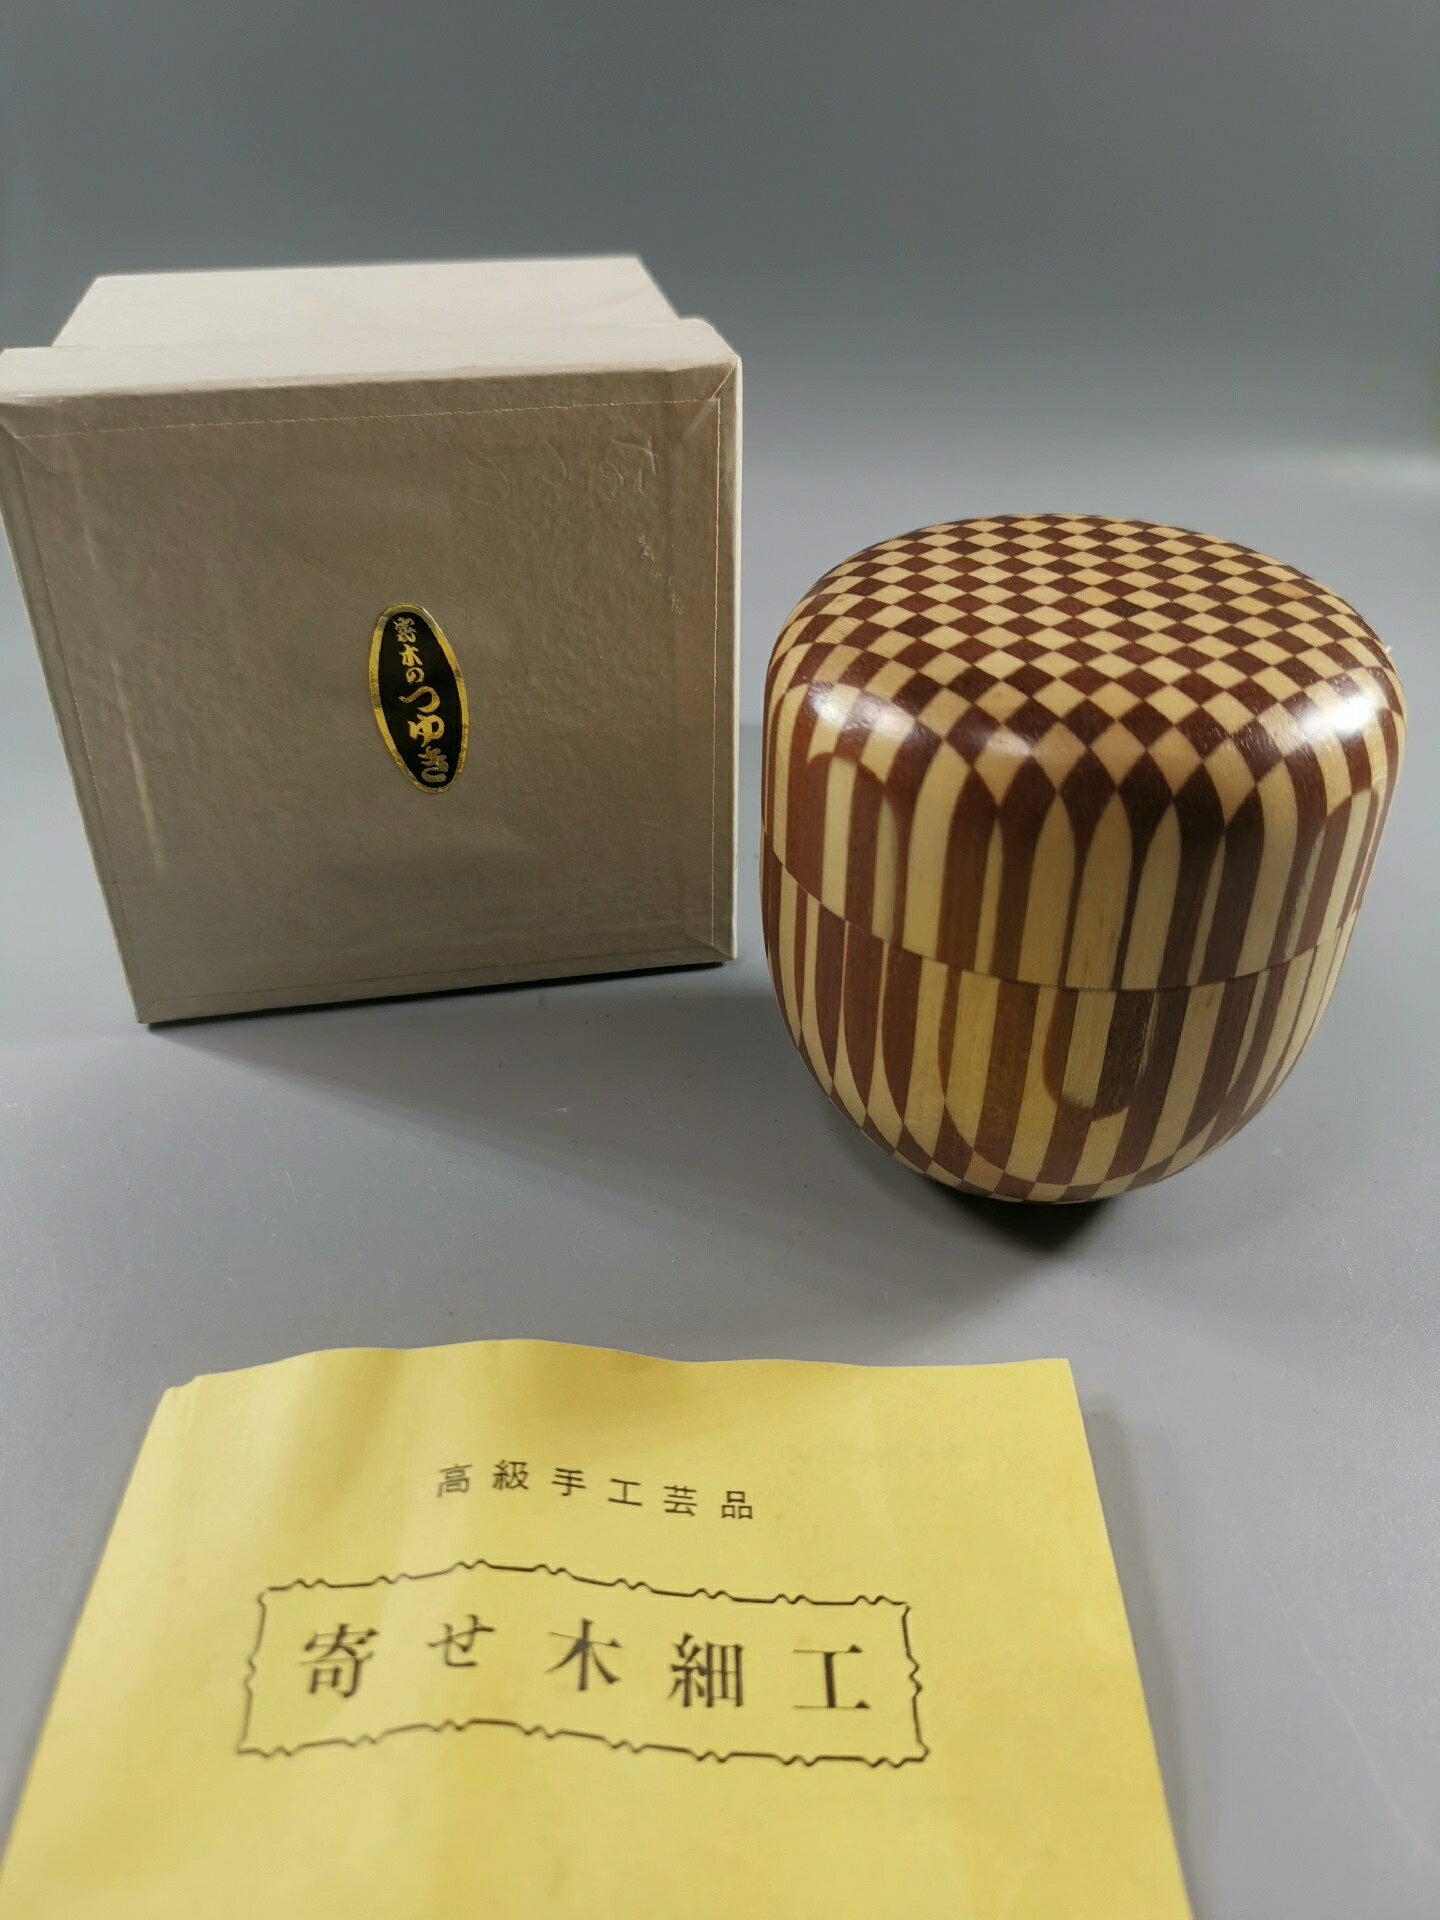 日本 箱根傳統工藝 寄木細工 茶棗 茶入 茶倉 茶葉罐 收納